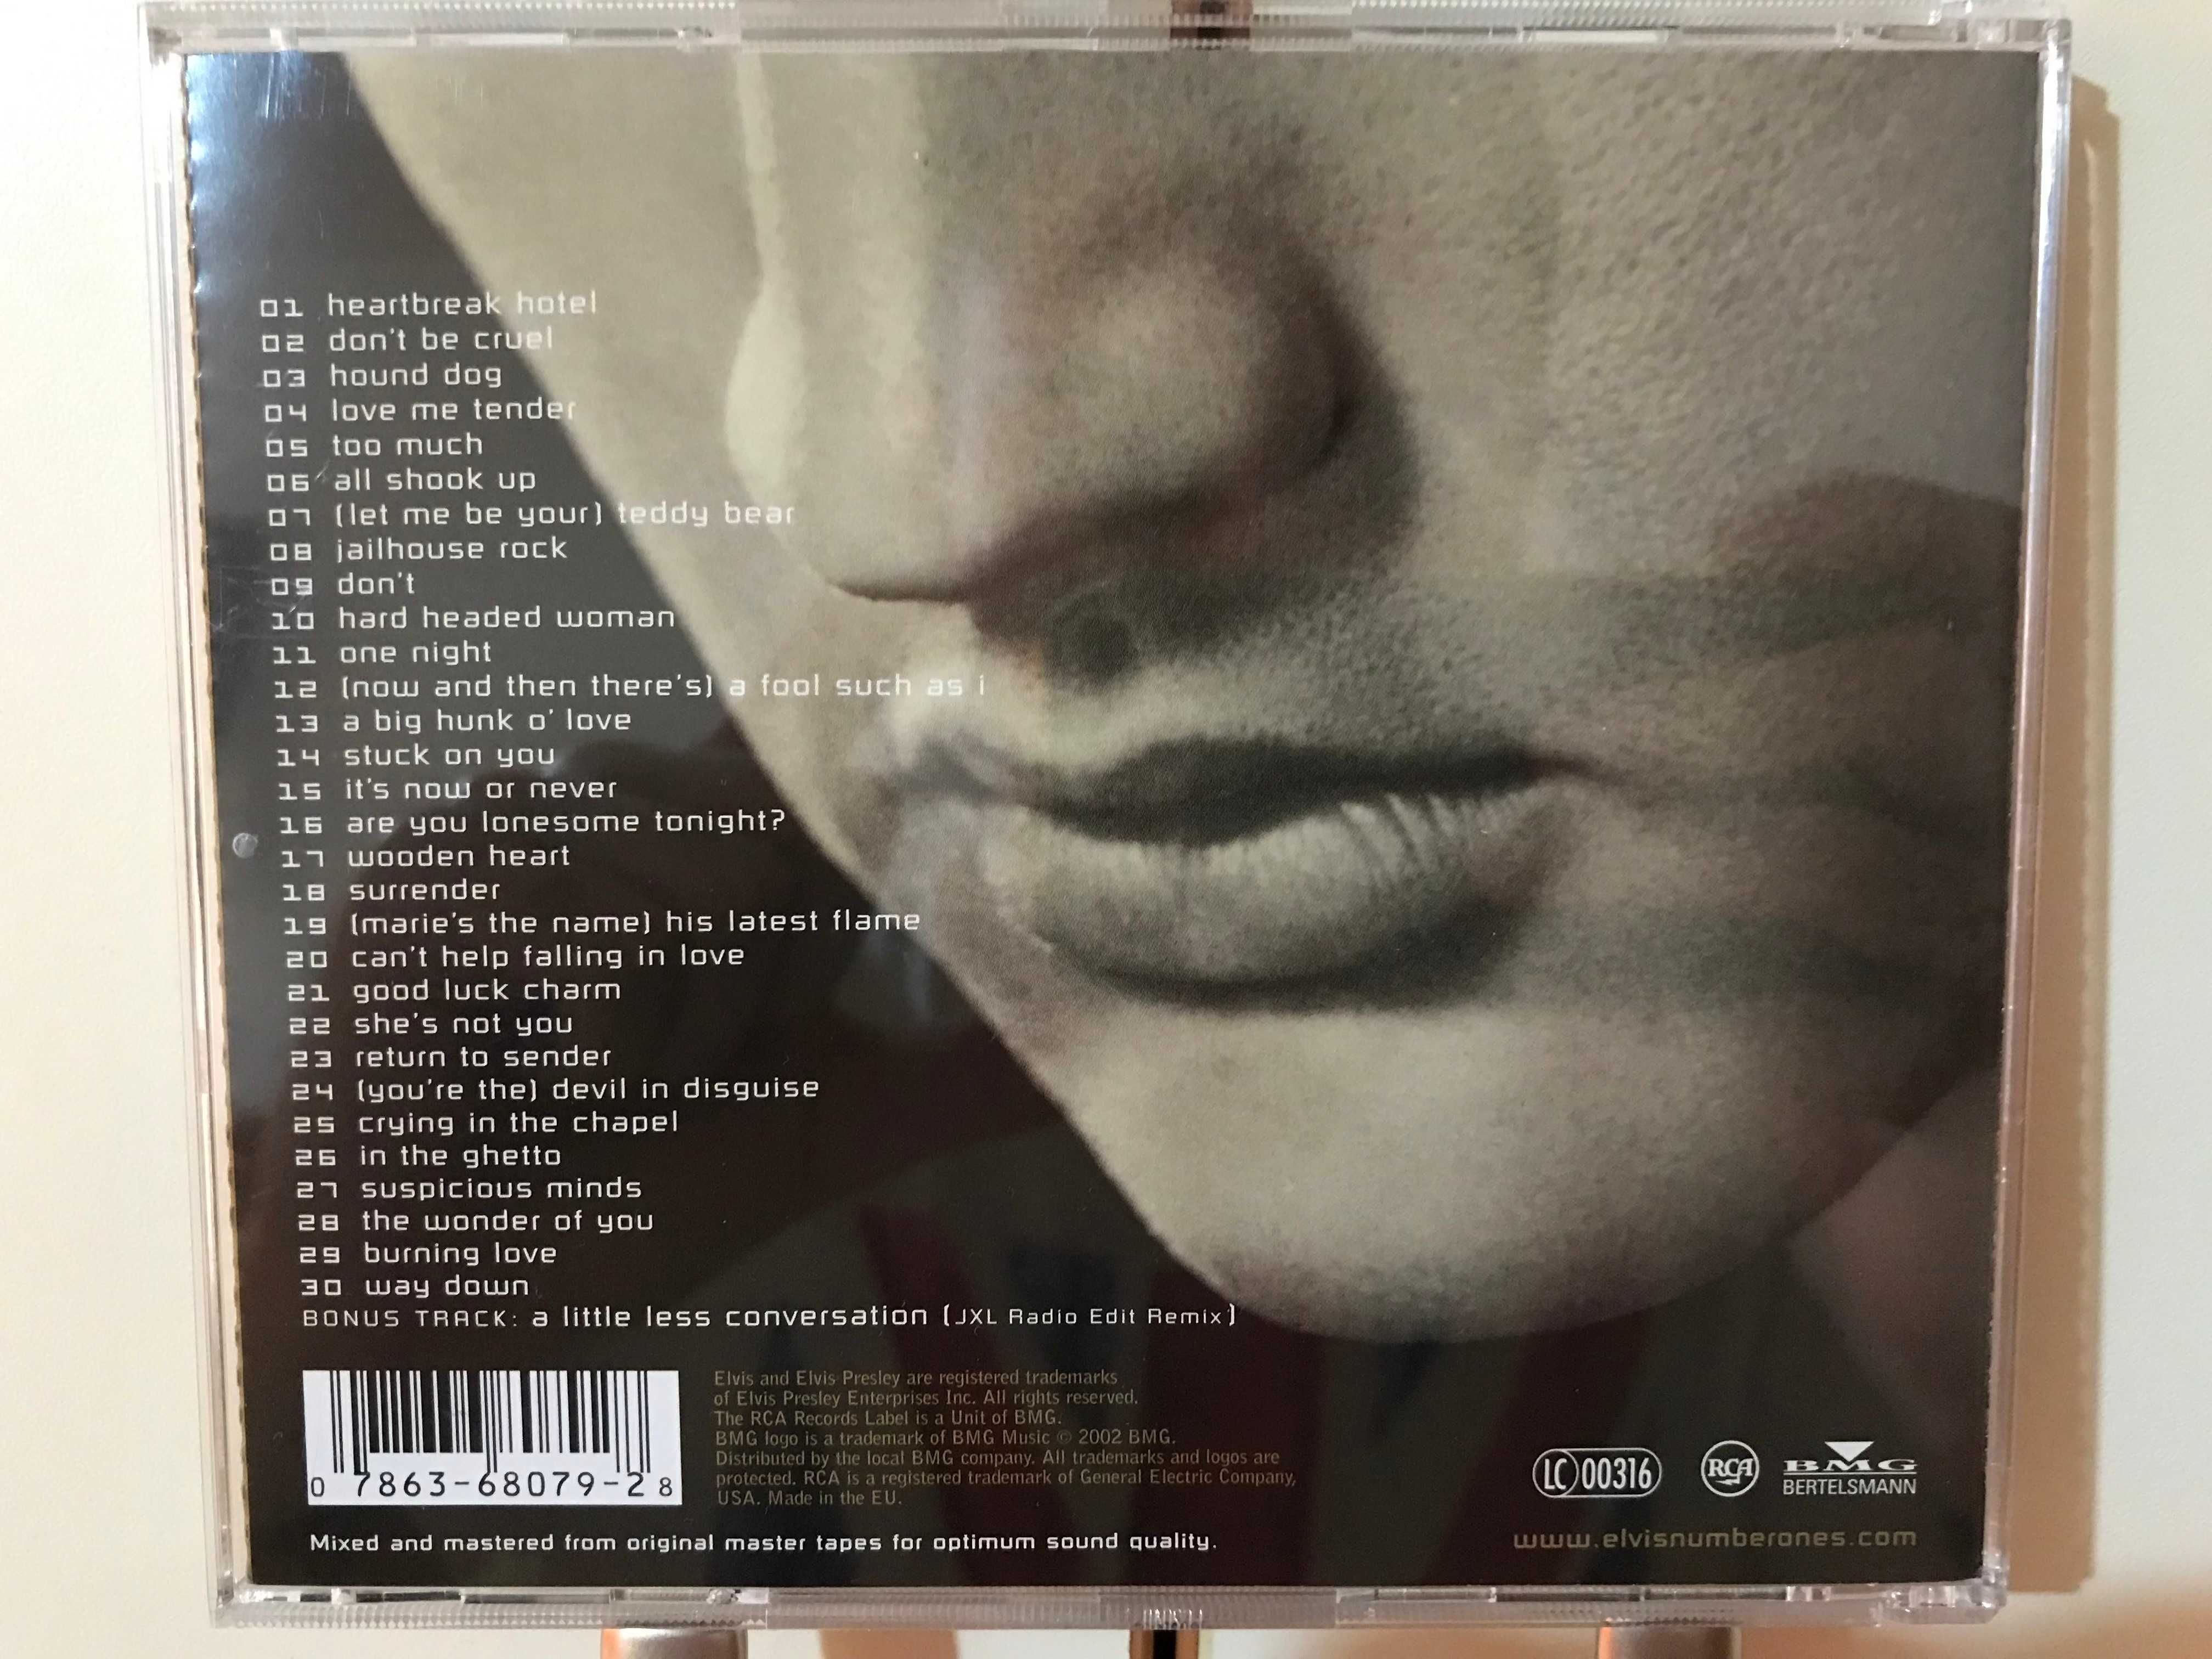 CD-uri ABBA/Elvis Presley/No Doubt